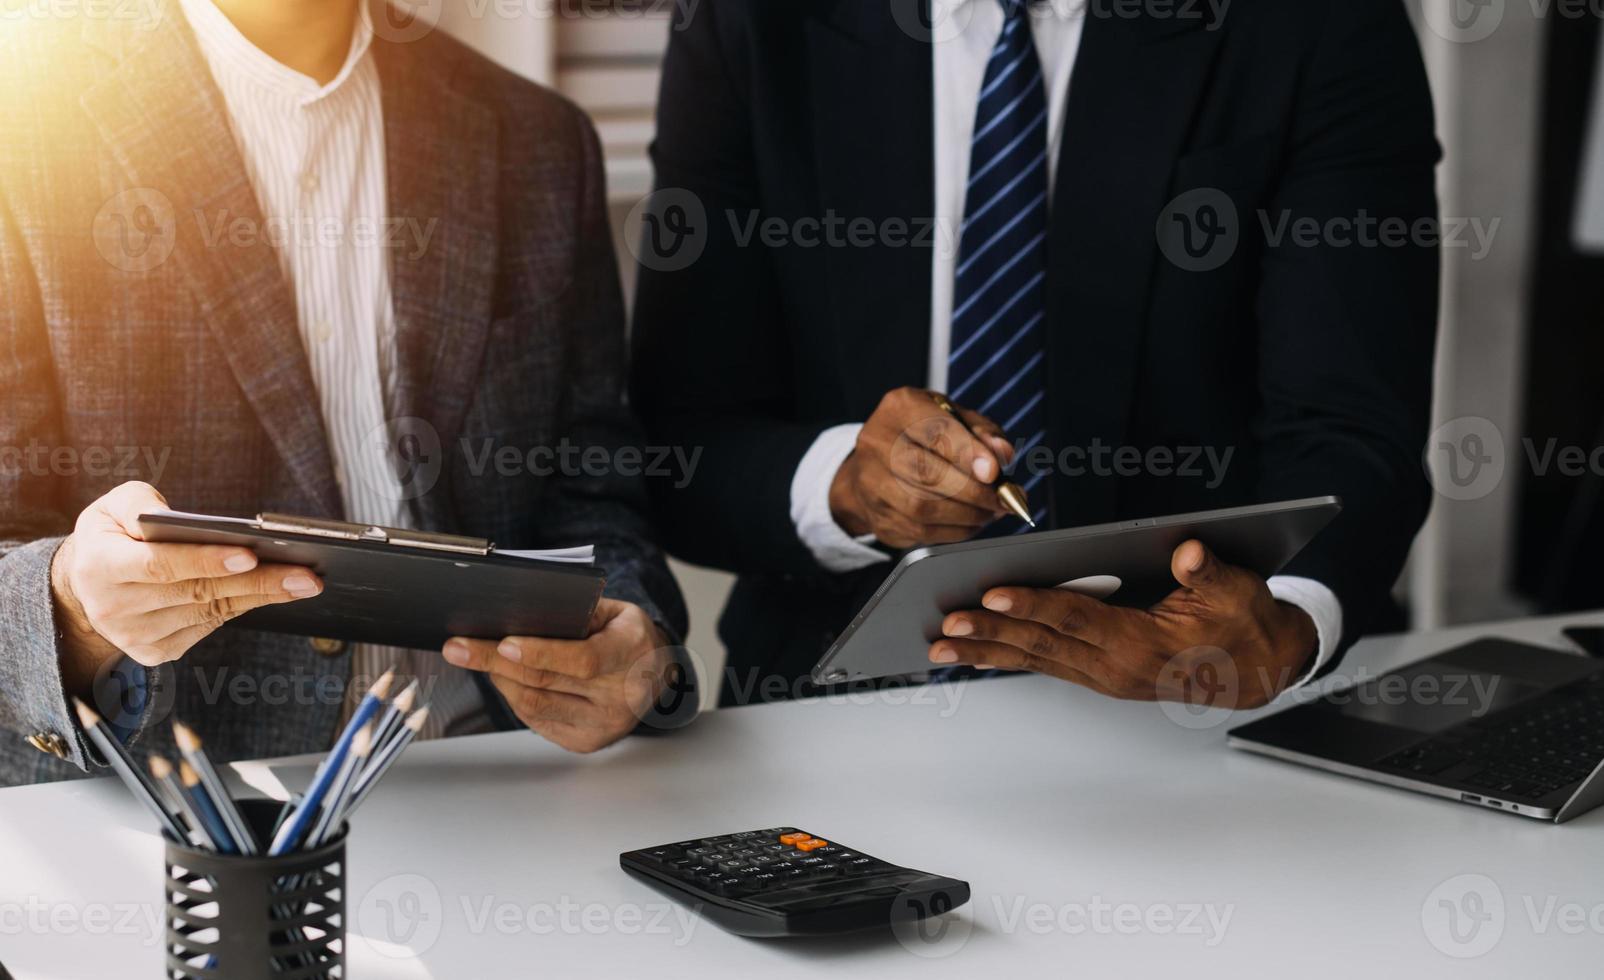 analistas financeiros analisam relatórios financeiros de negócios em um projeto de investimento de planejamento de tablet digital durante uma discussão em uma reunião de empresas mostrando os resultados de seu trabalho em equipe bem-sucedido. foto